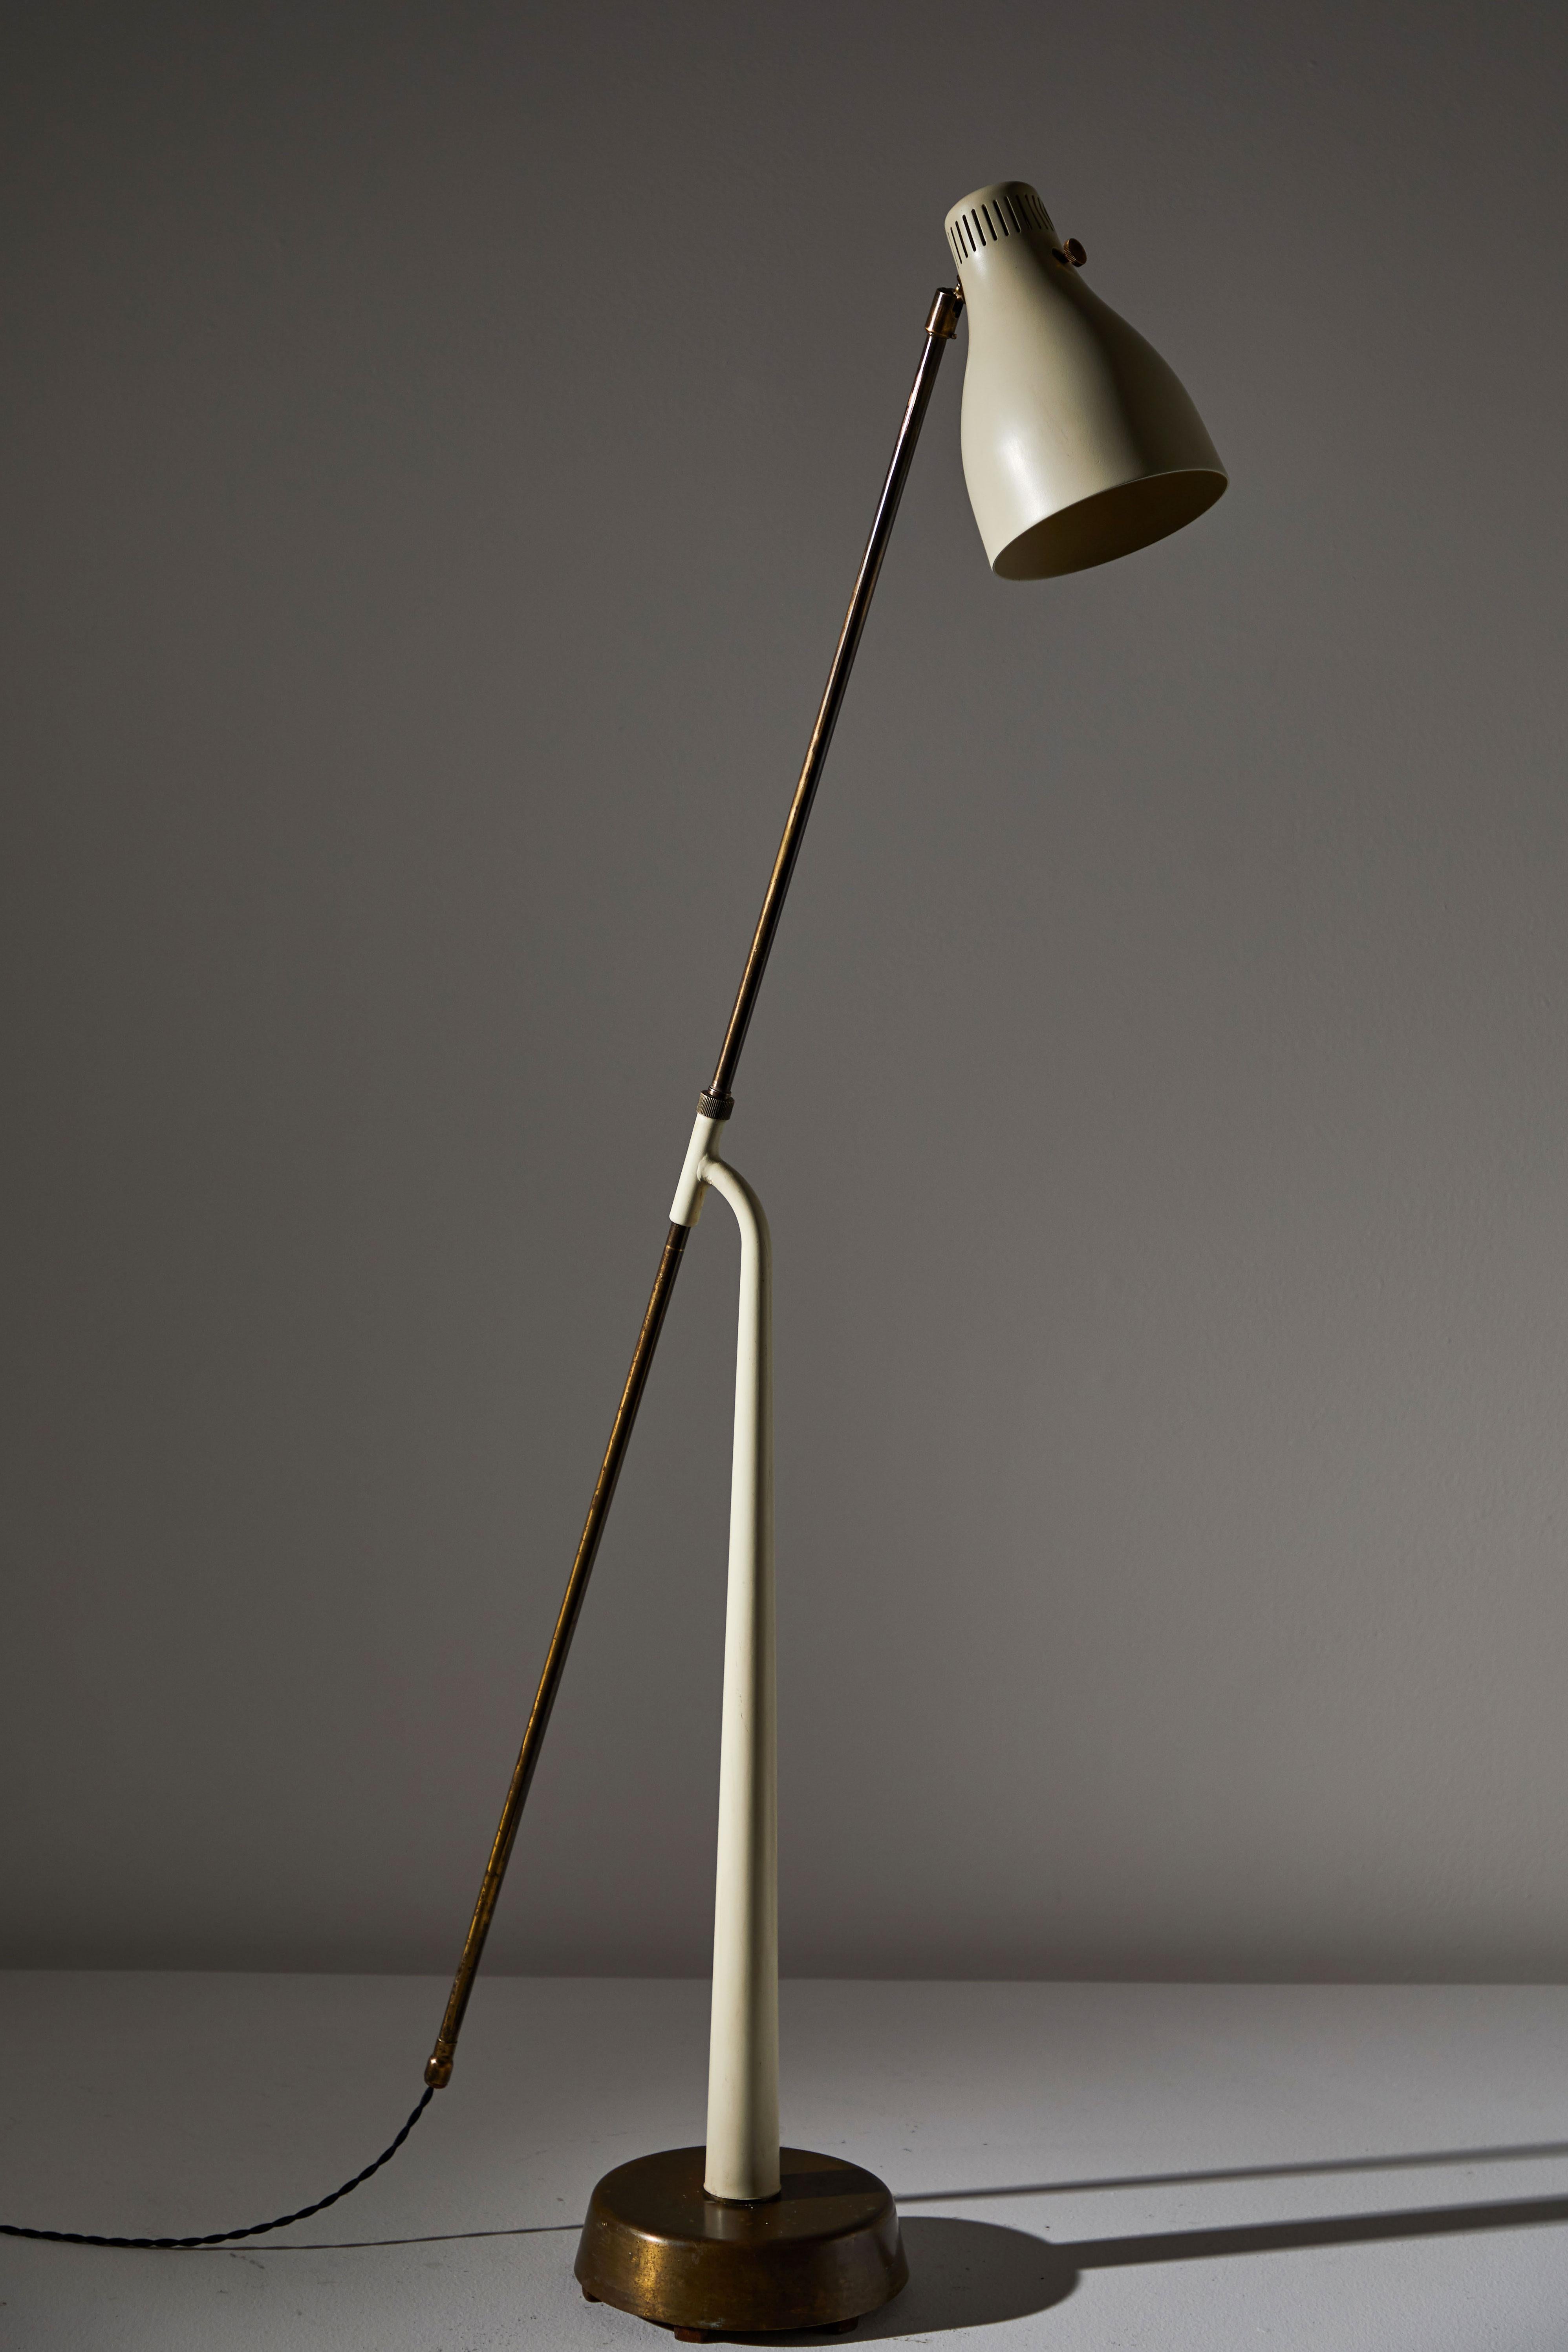 Brass Rare Model 541 Floor Lamp by Hans Bergstrom for Atelje Lyktan